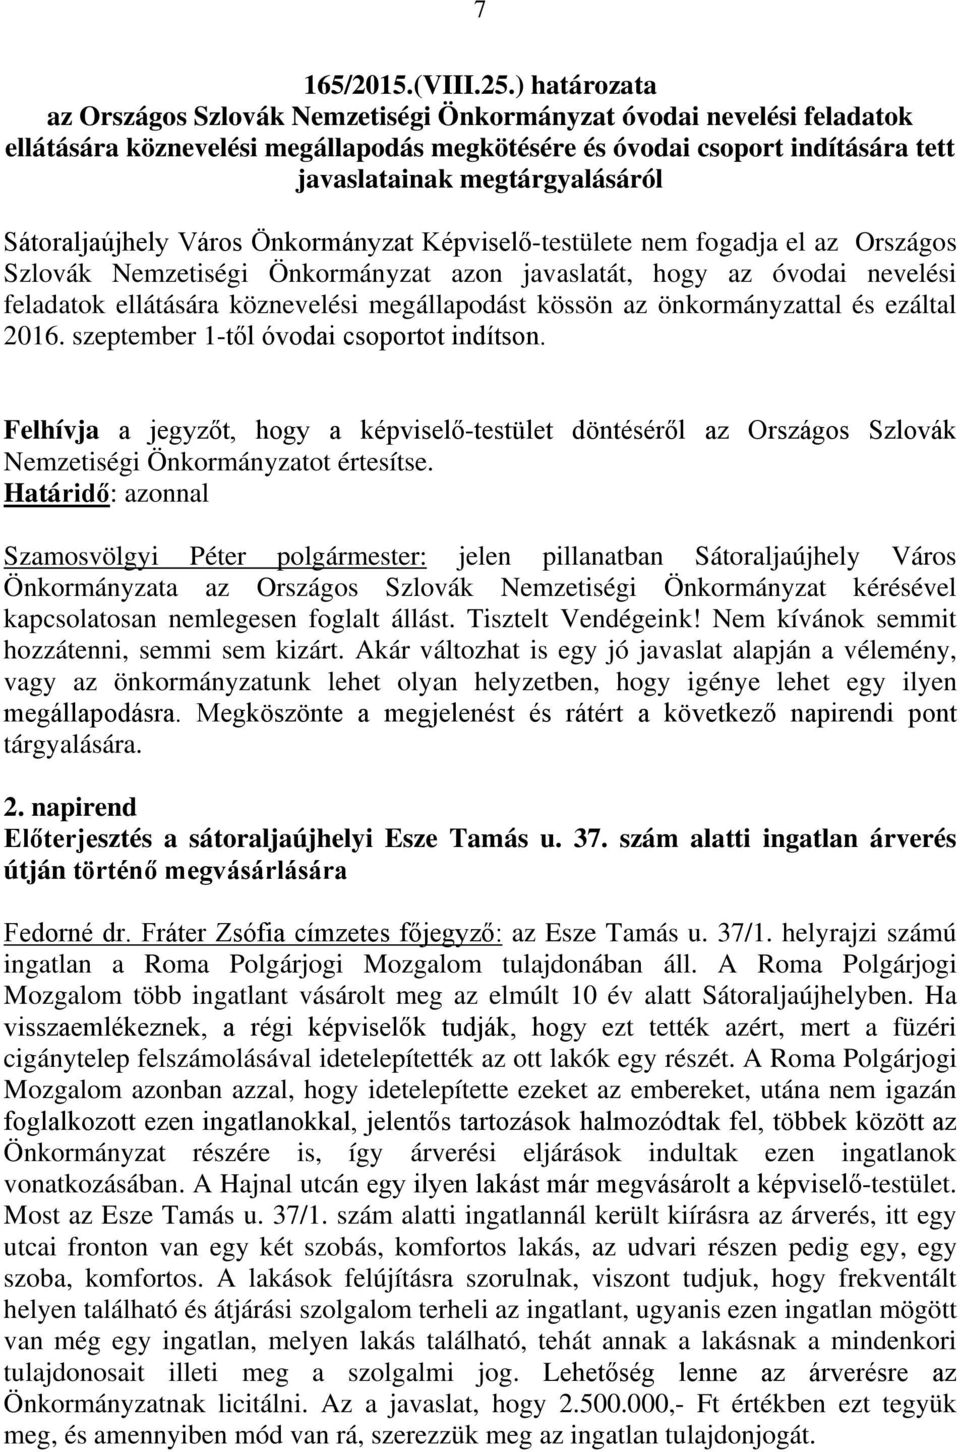 Sátoraljaújhely Város Önkormányzat Képviselő-testülete nem fogadja el az Országos Szlovák Nemzetiségi Önkormányzat azon javaslatát, hogy az óvodai nevelési feladatok ellátására köznevelési